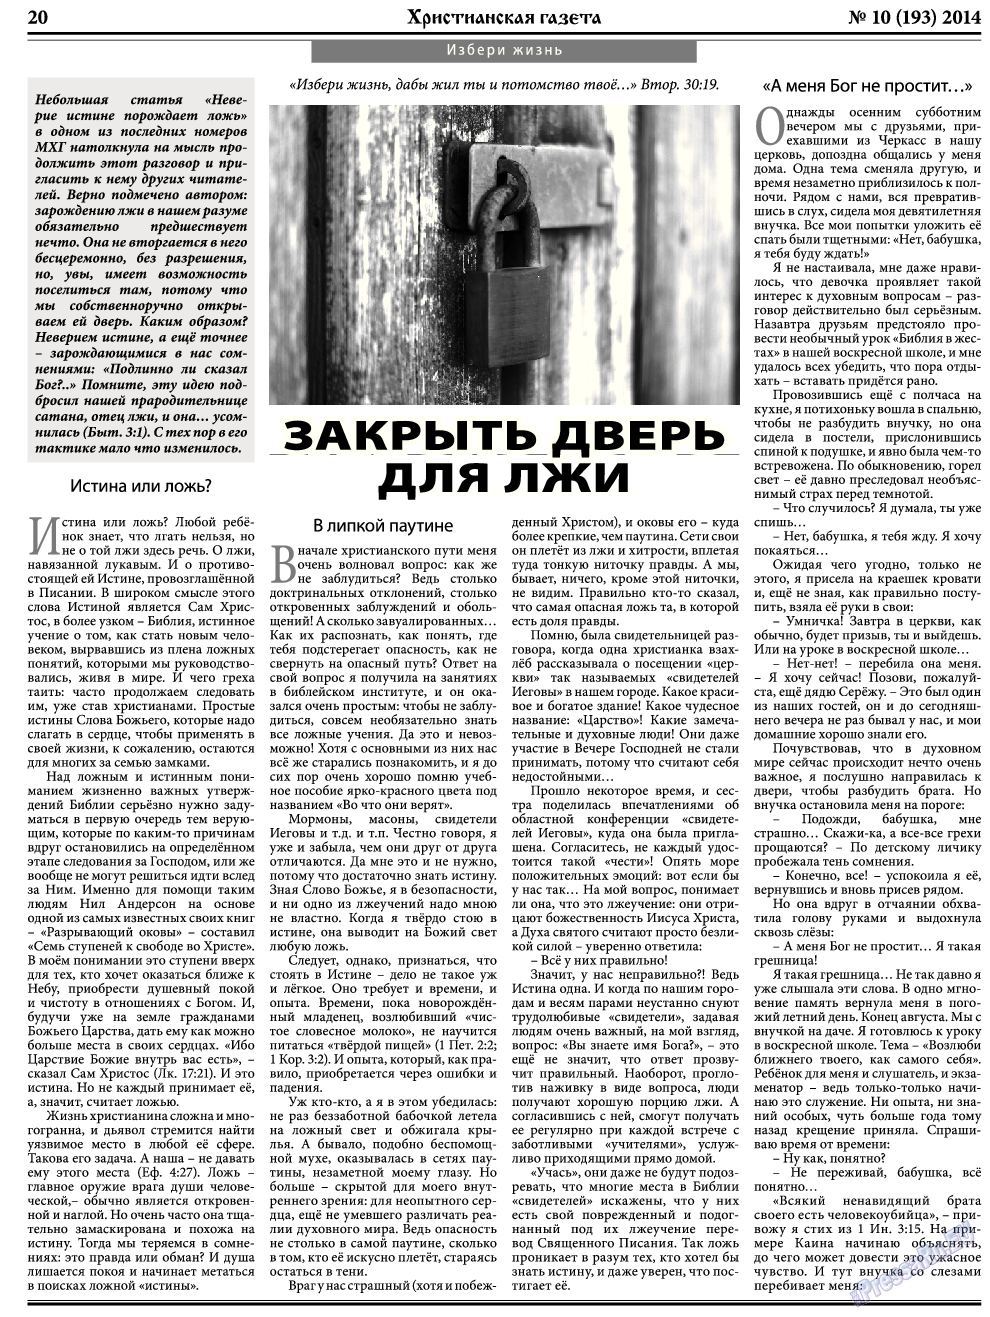 Христианская газета, газета. 2014 №10 стр.28